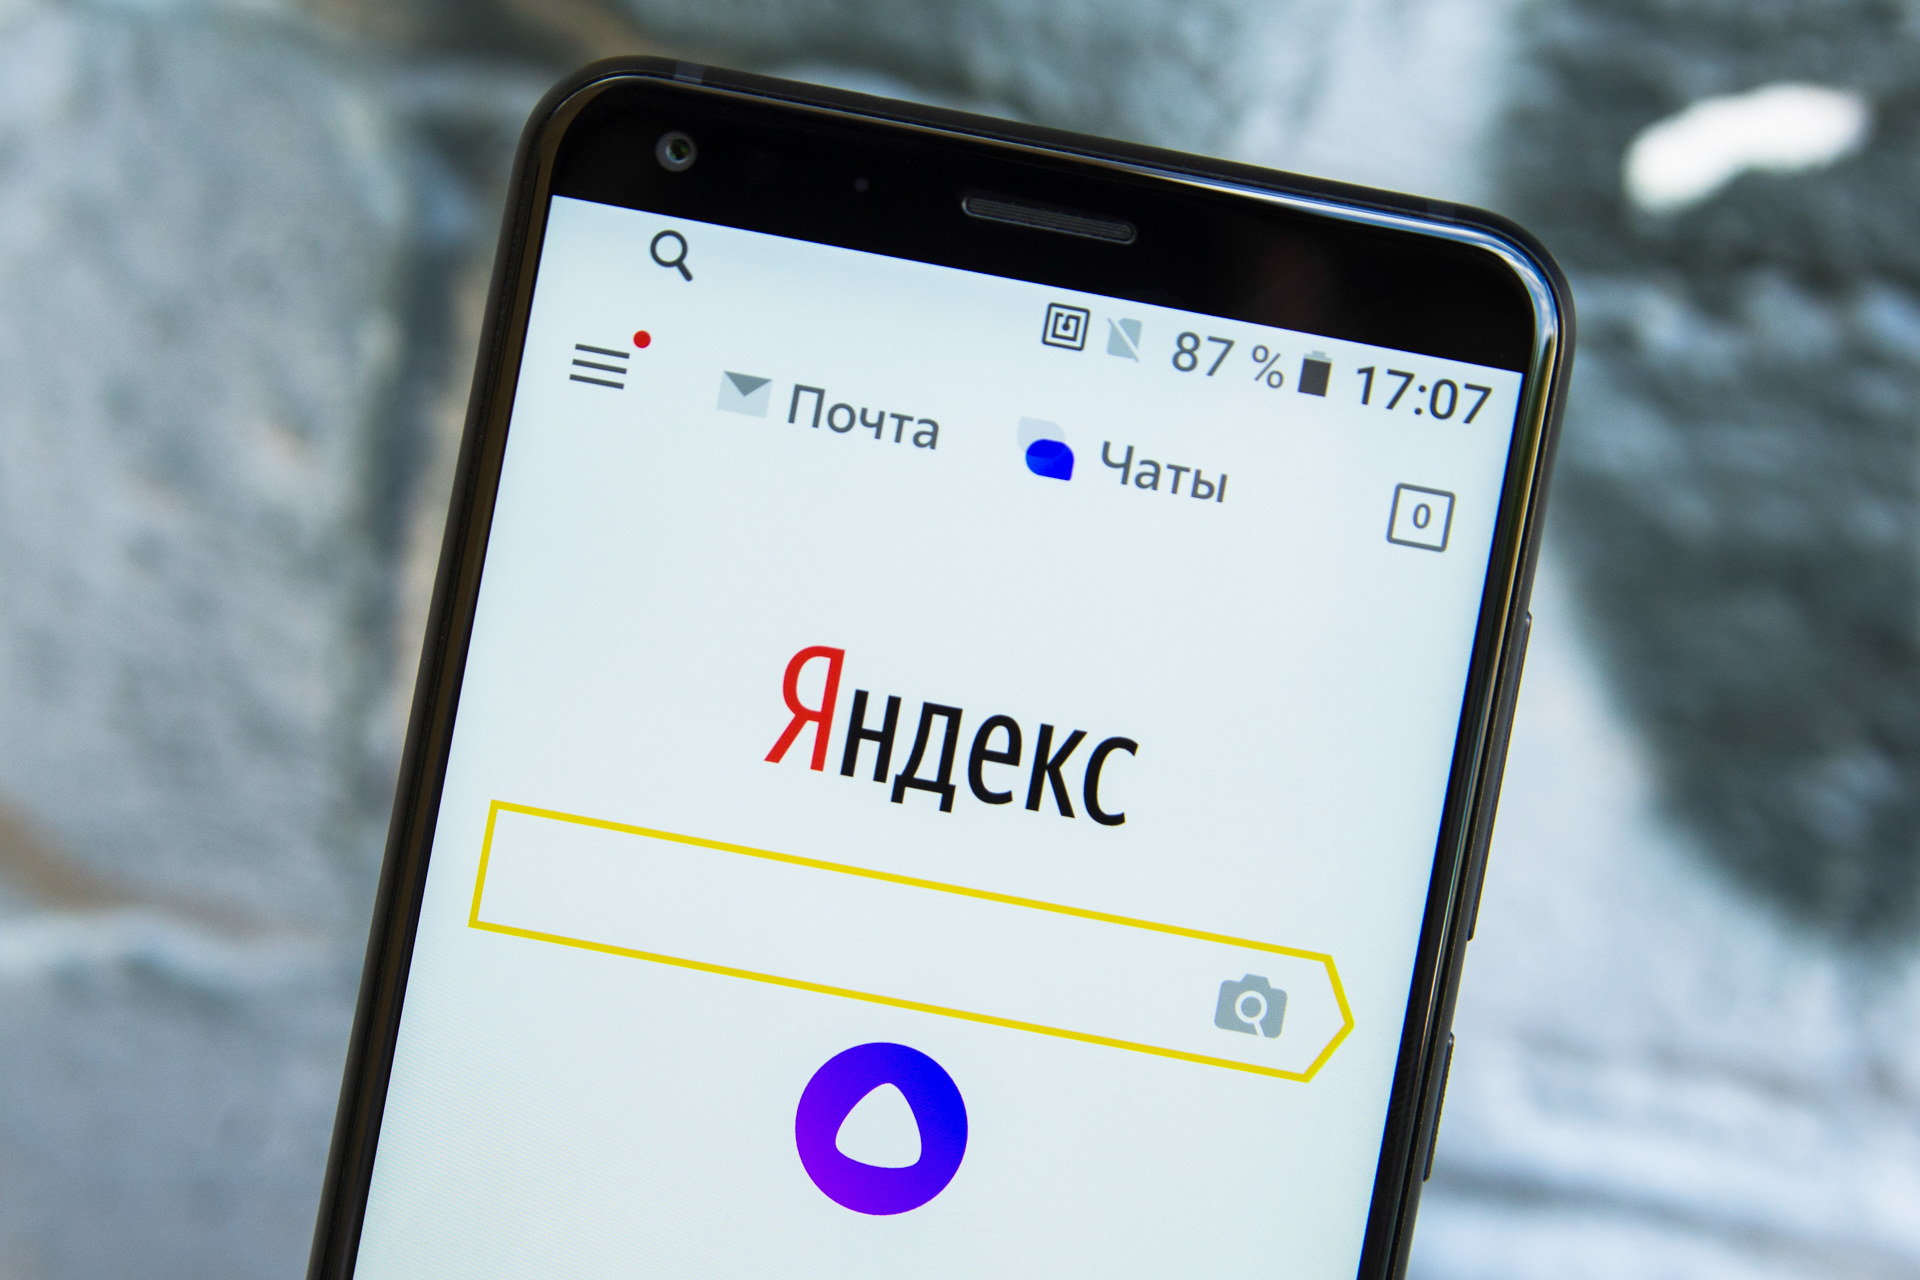 Загрузки яндекса на моем телефоне. Страница поиска в Яндексе на смартфоне.